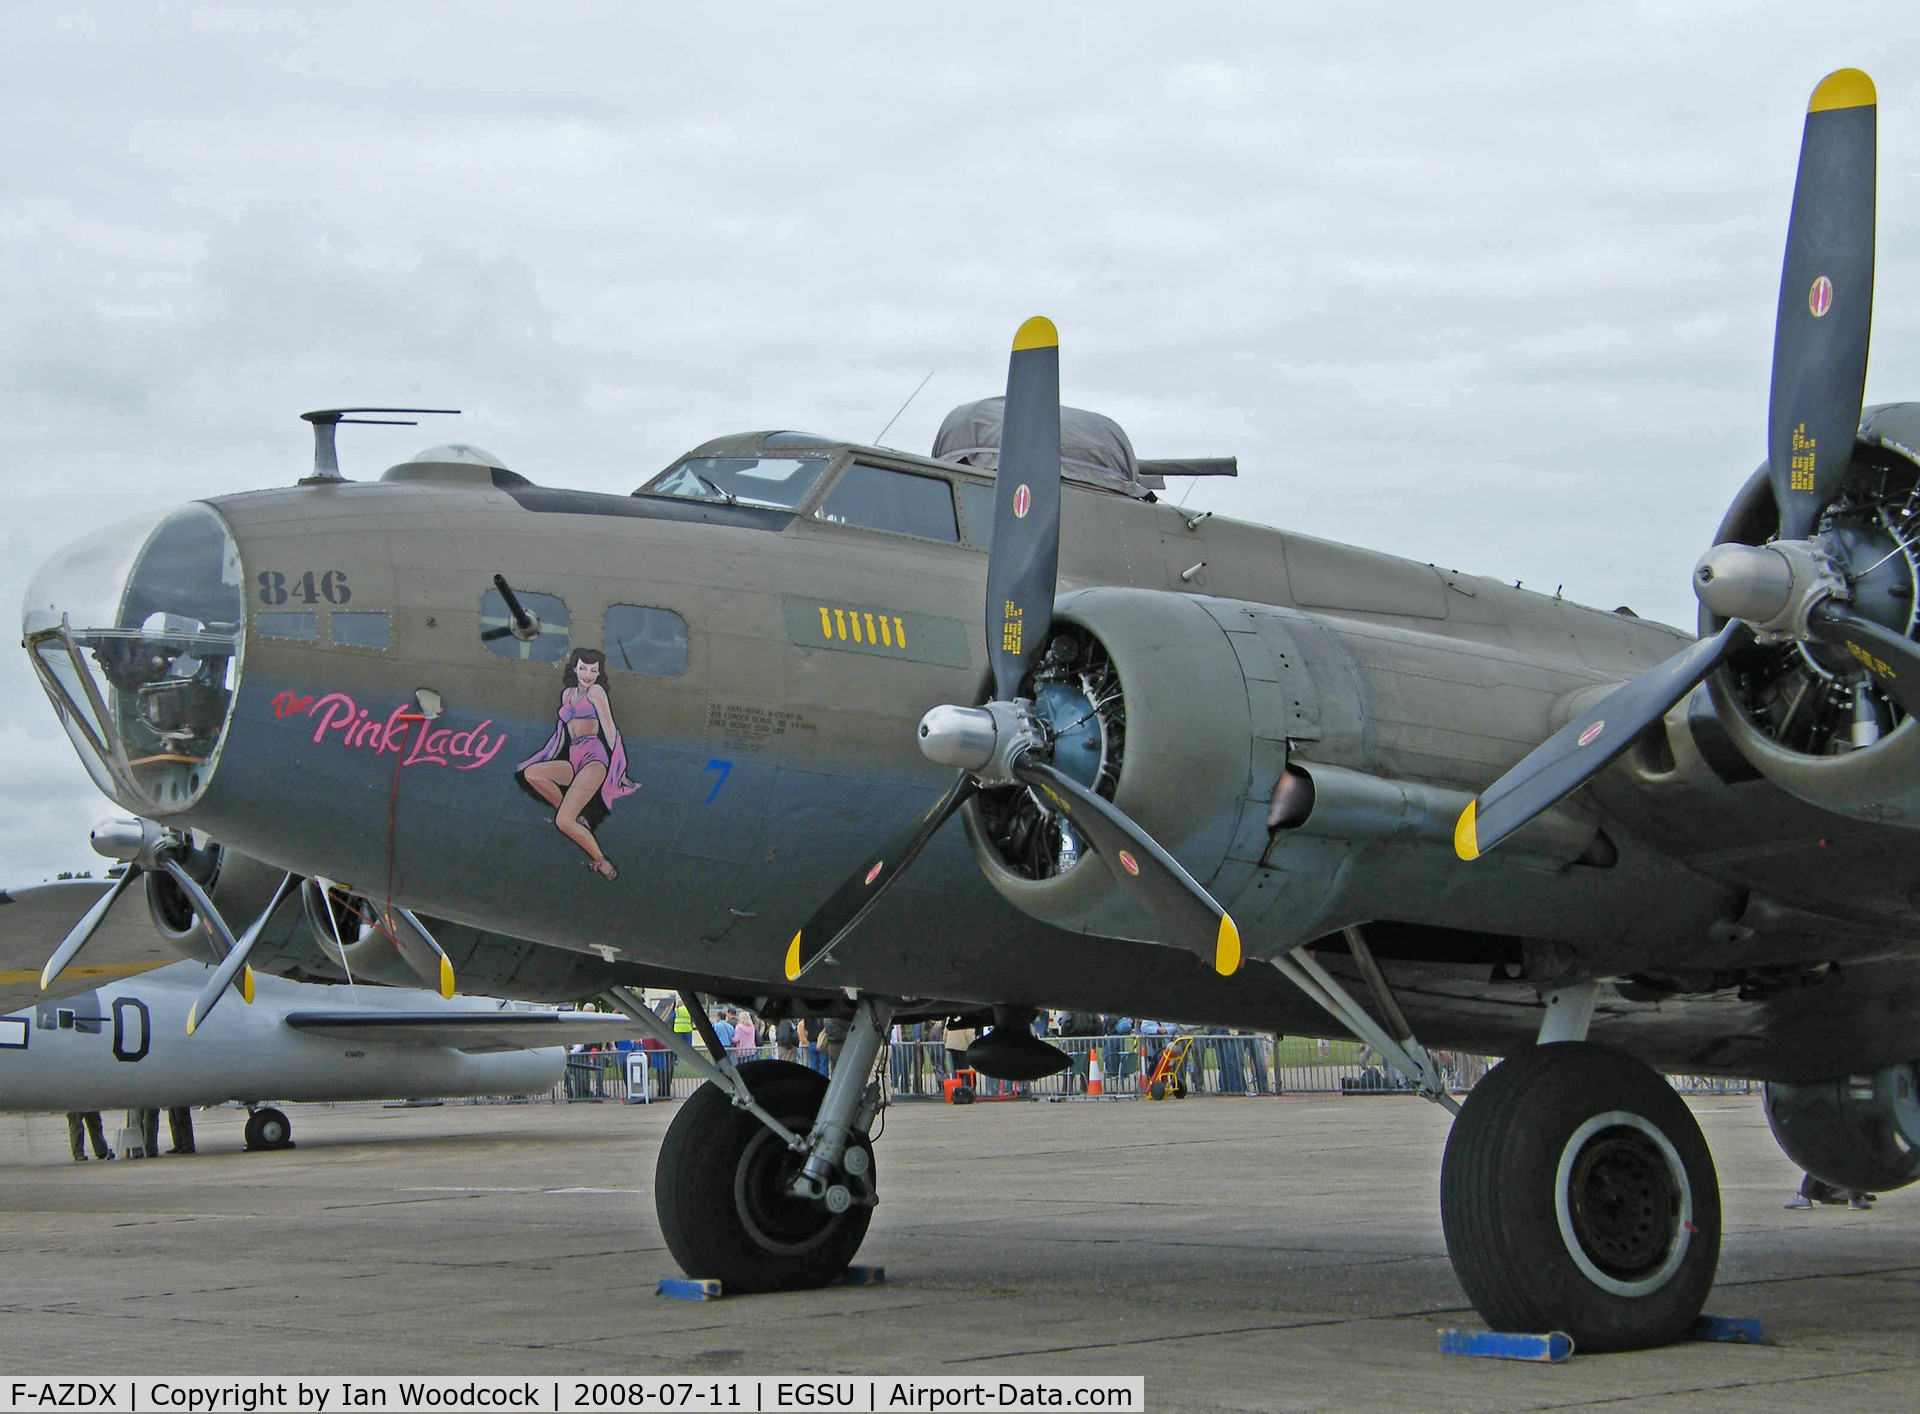 F-AZDX, 1944 Boeing B-17G Flying Fortress C/N 8246, Boeing B-17G/Duxford (Pink Lady)